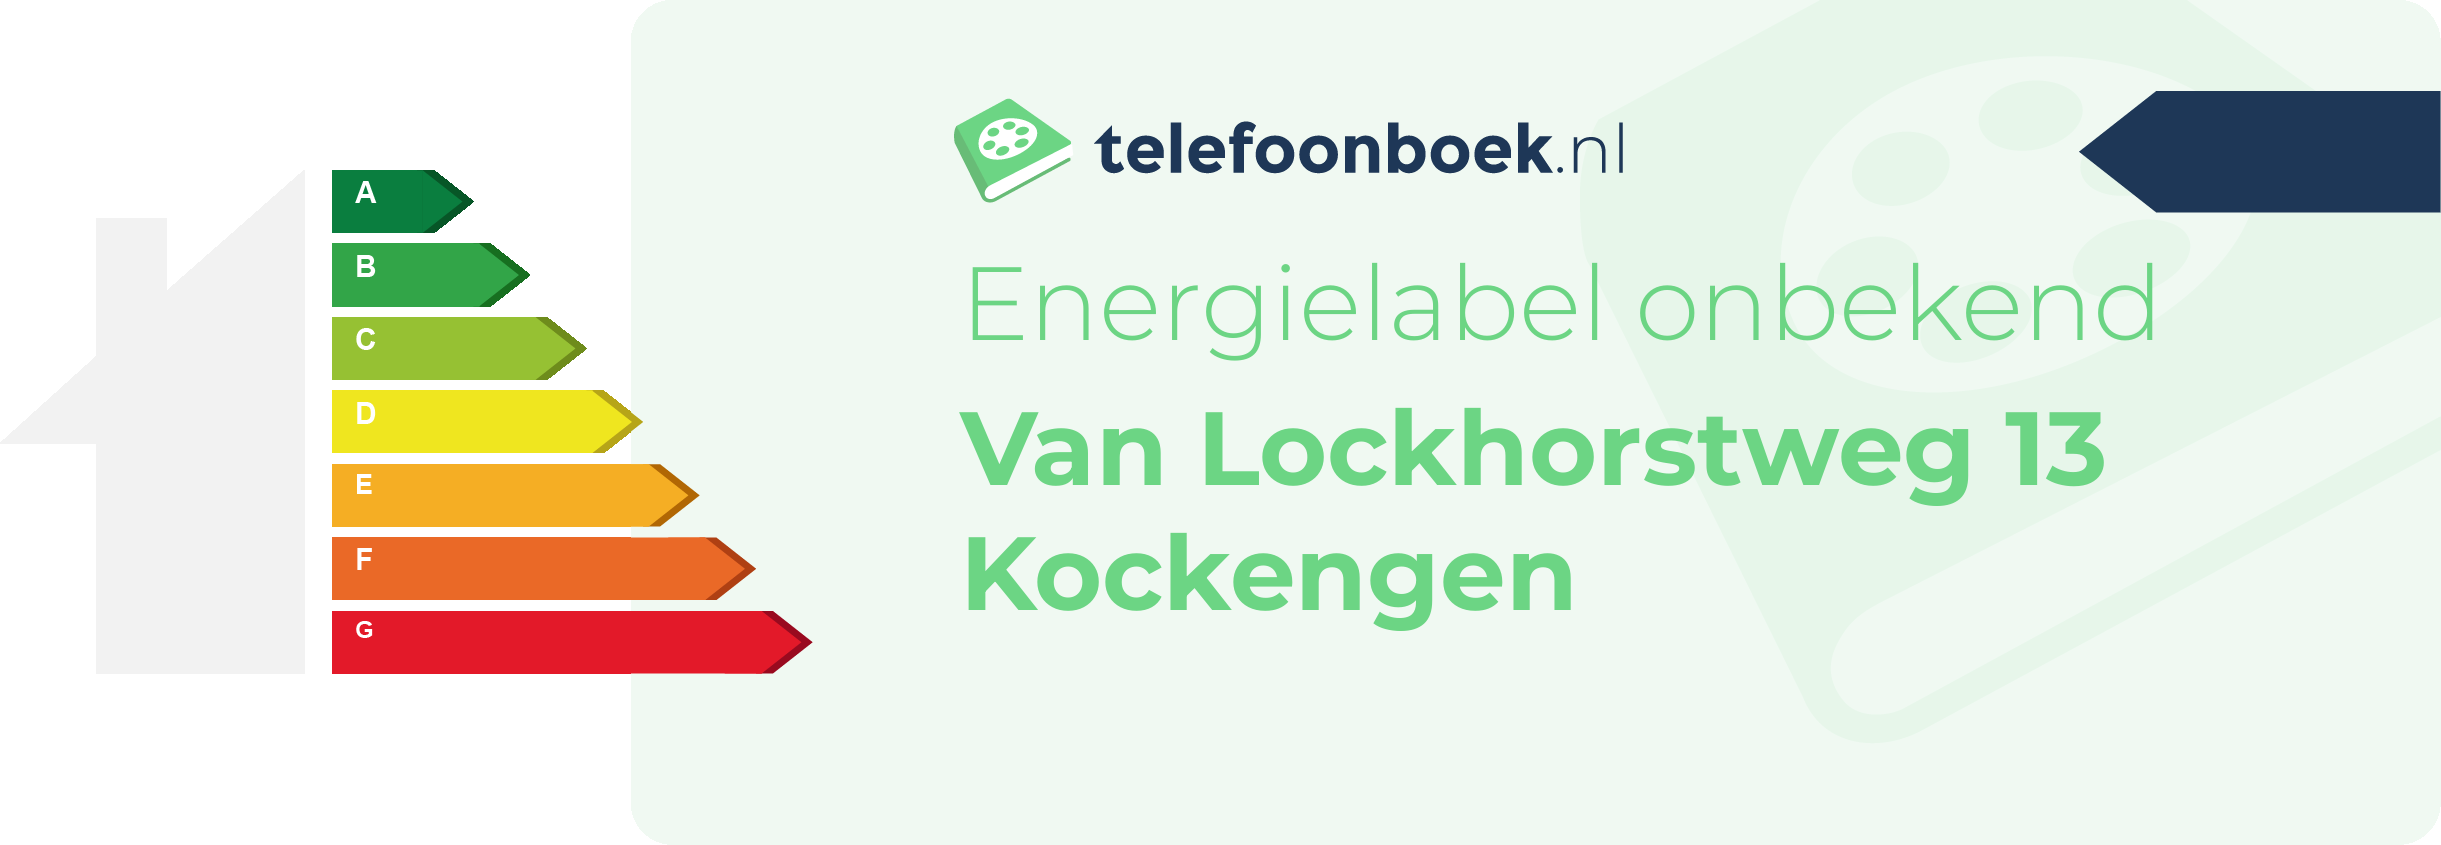 Energielabel Van Lockhorstweg 13 Kockengen